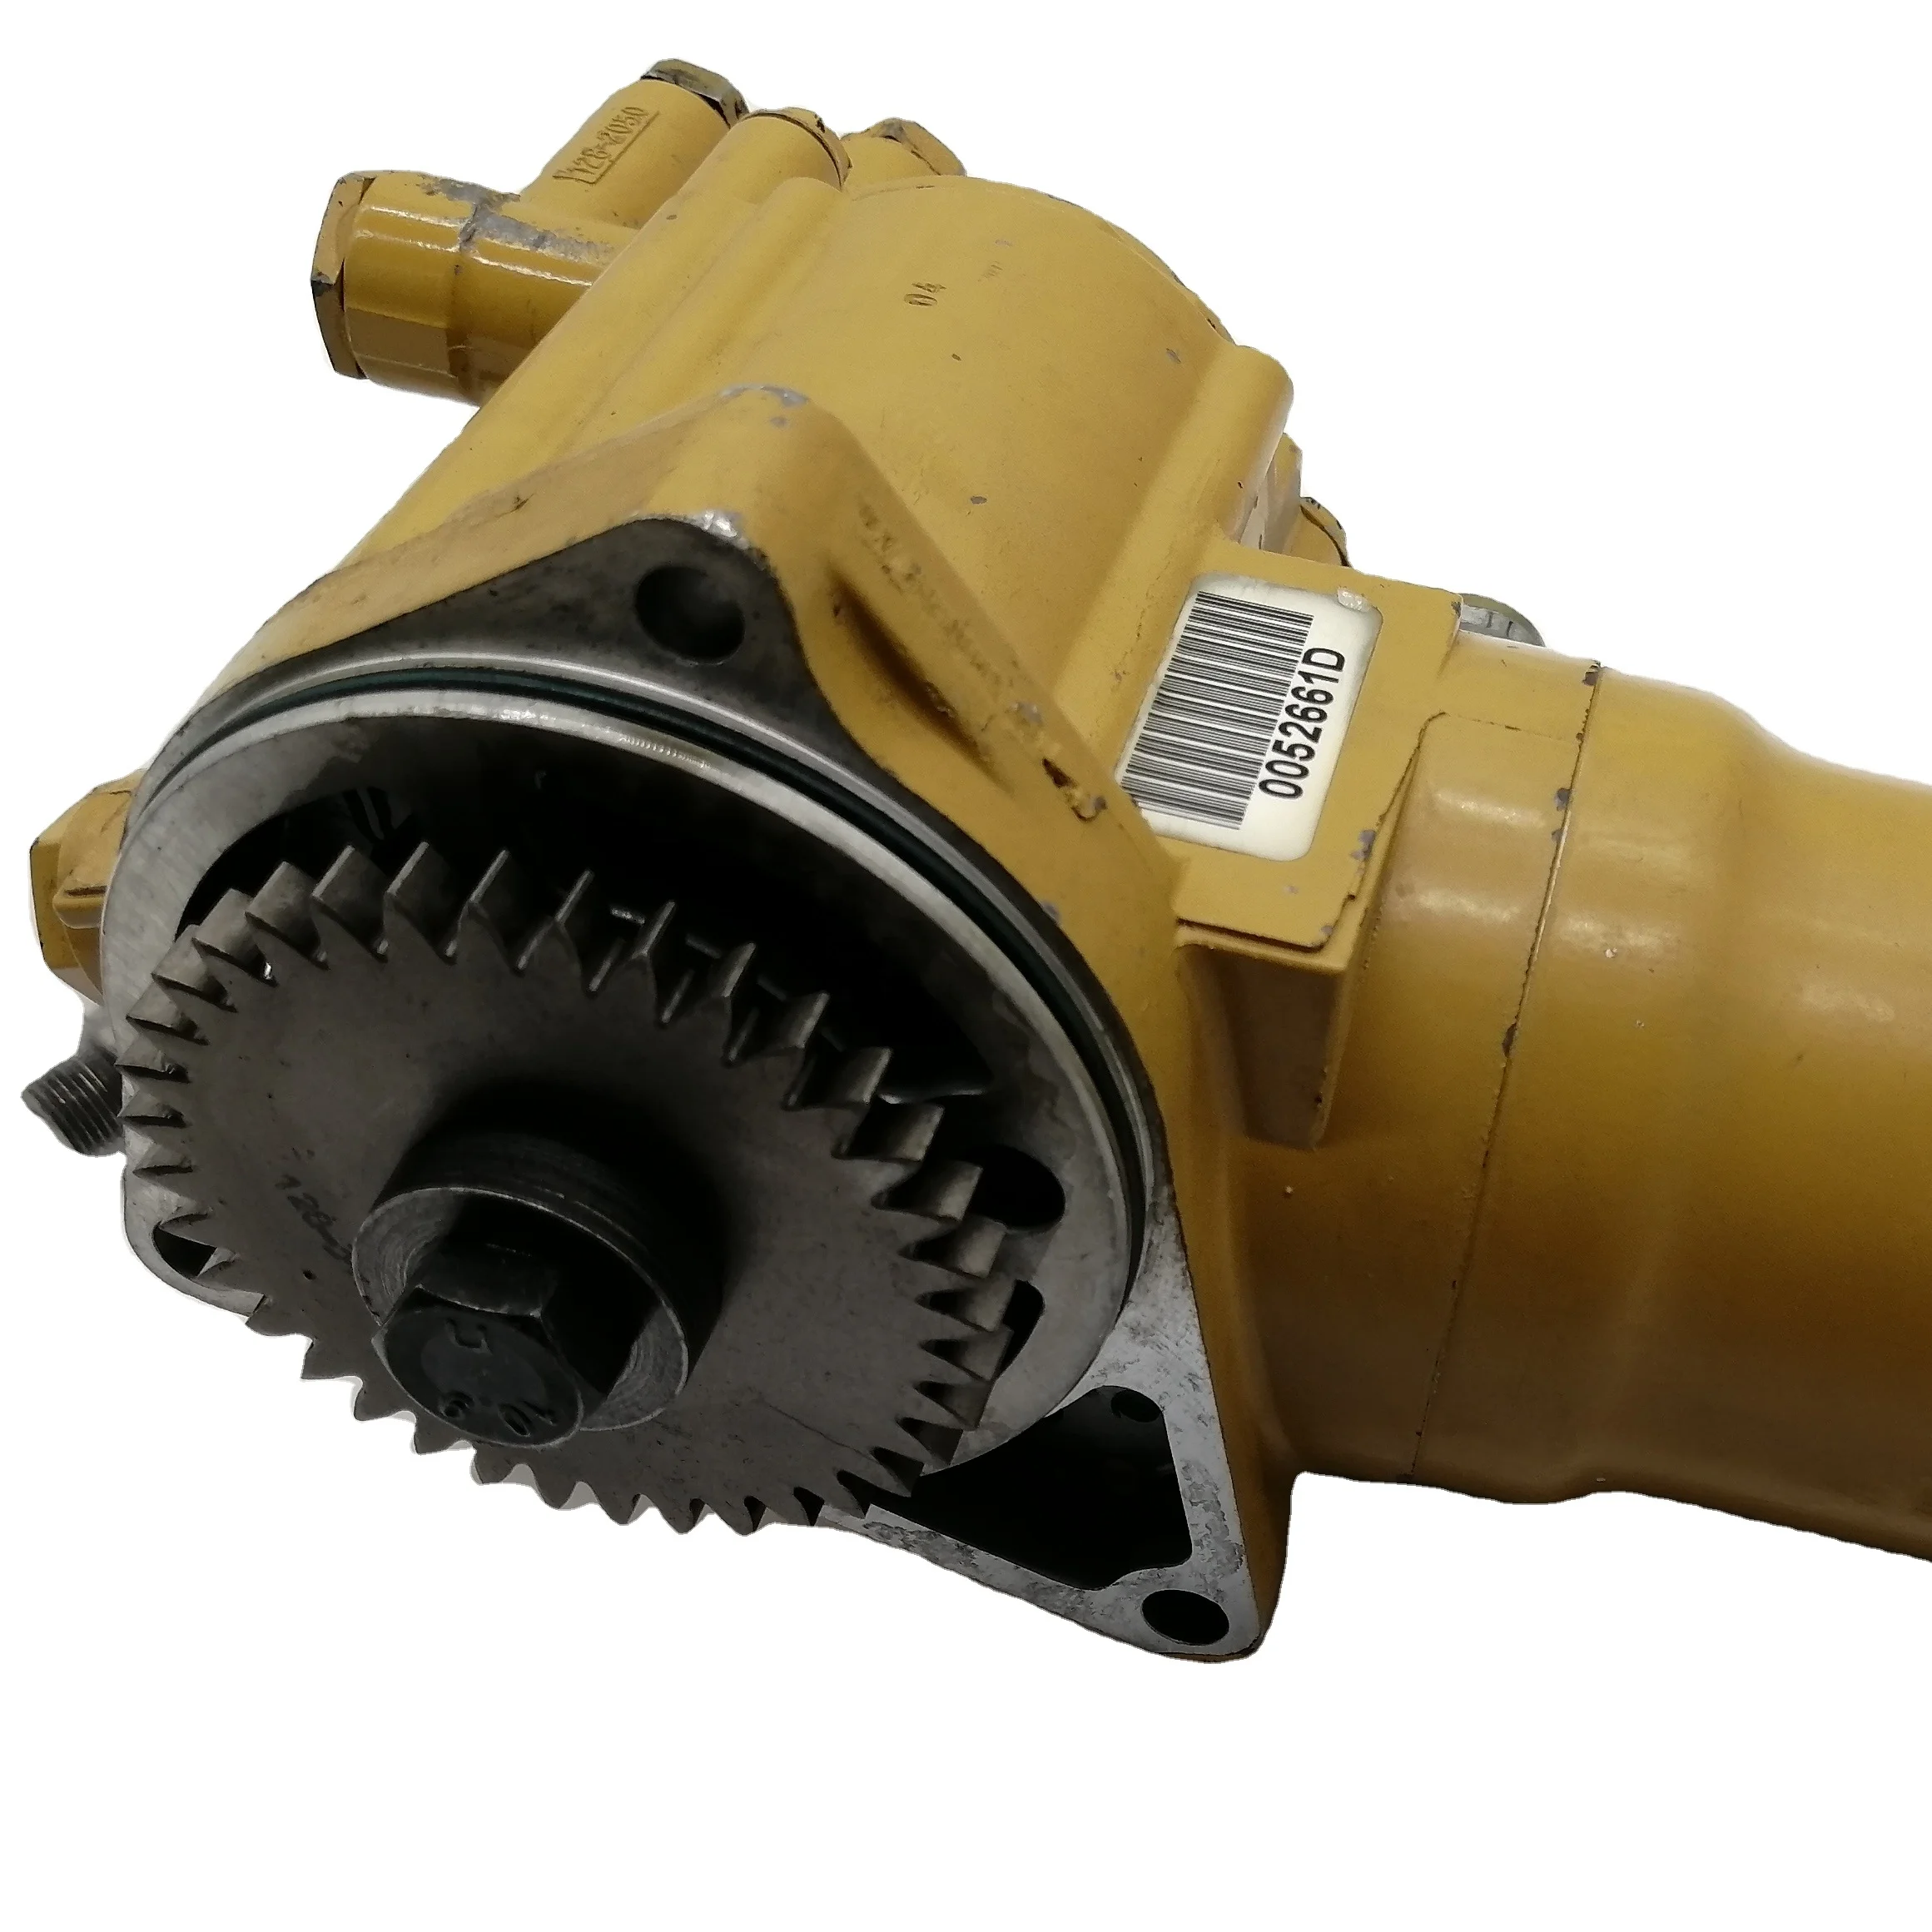 

E322C CAT325C Excavator Fuel Injection Pump for 3126B Engine CAT Original 1787521 1807341 10R2995 178-7521 180-7341 10R-2995